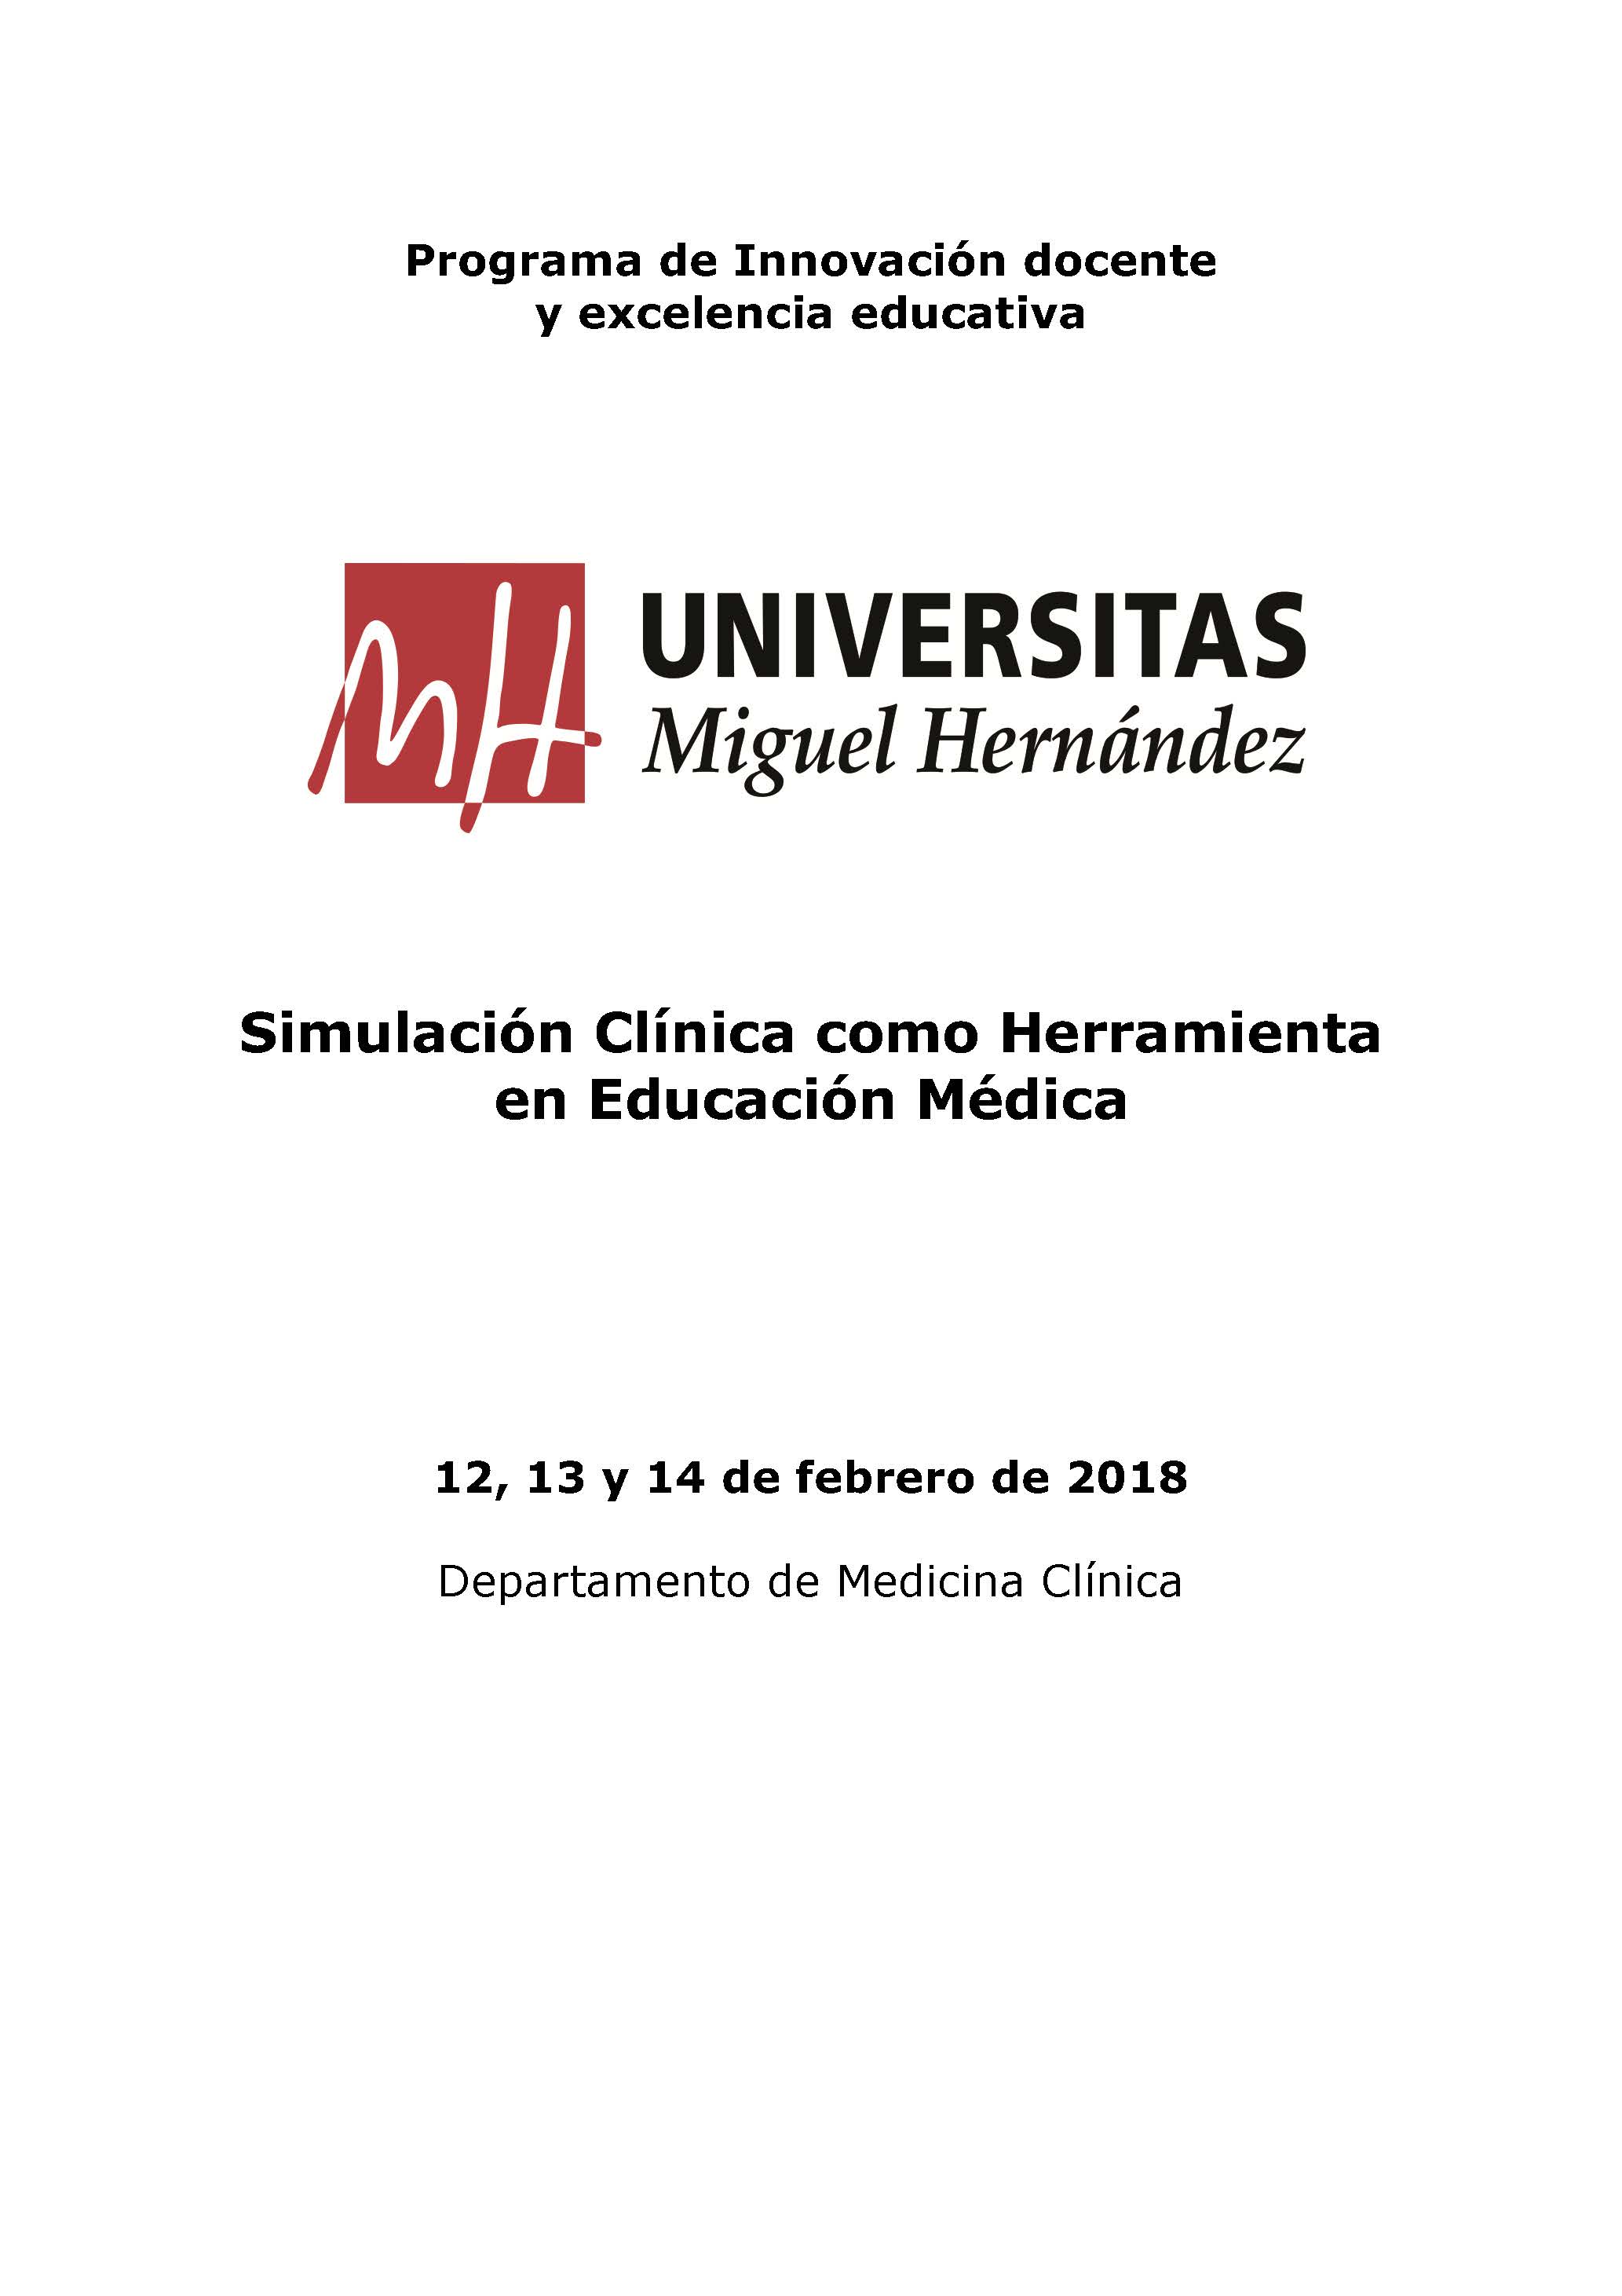 Cartel Curso simulación clínica UMH como herramienta en educación médica